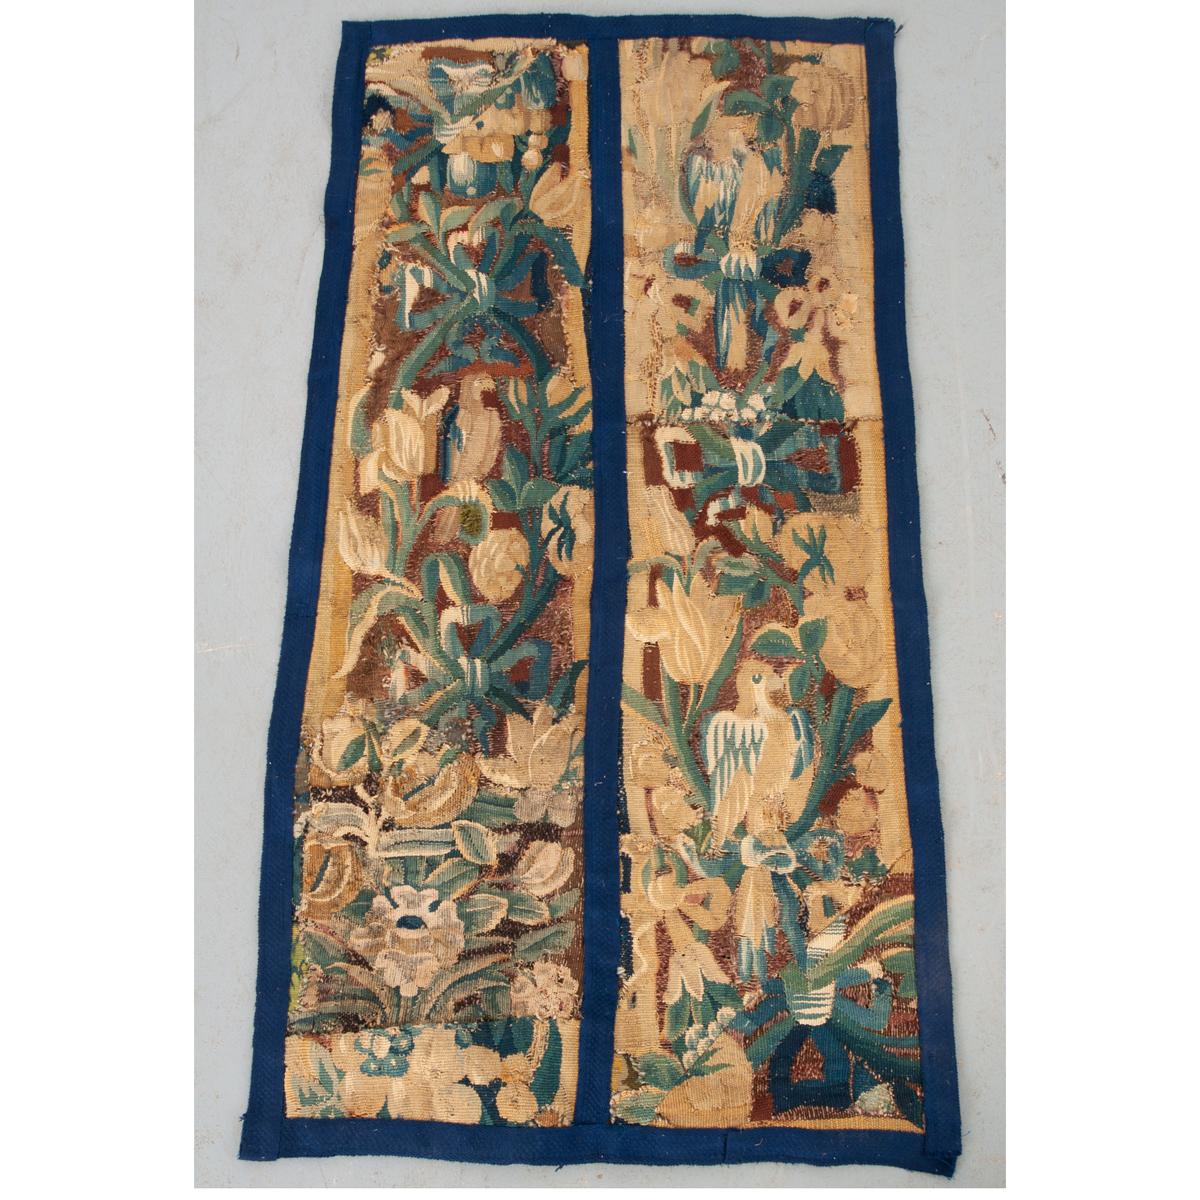 Dieses lebhafte Wandteppichfragment stammt aus dem Frankreich des 18. Jahrhunderts. Zwei Paneele wurden kürzlich mit leuchtend blauen Verzierungen angebracht. Der Stoff ist abgenutzt, hat aber sein lebhaftes Blumenmotiv und einen großen, hockenden